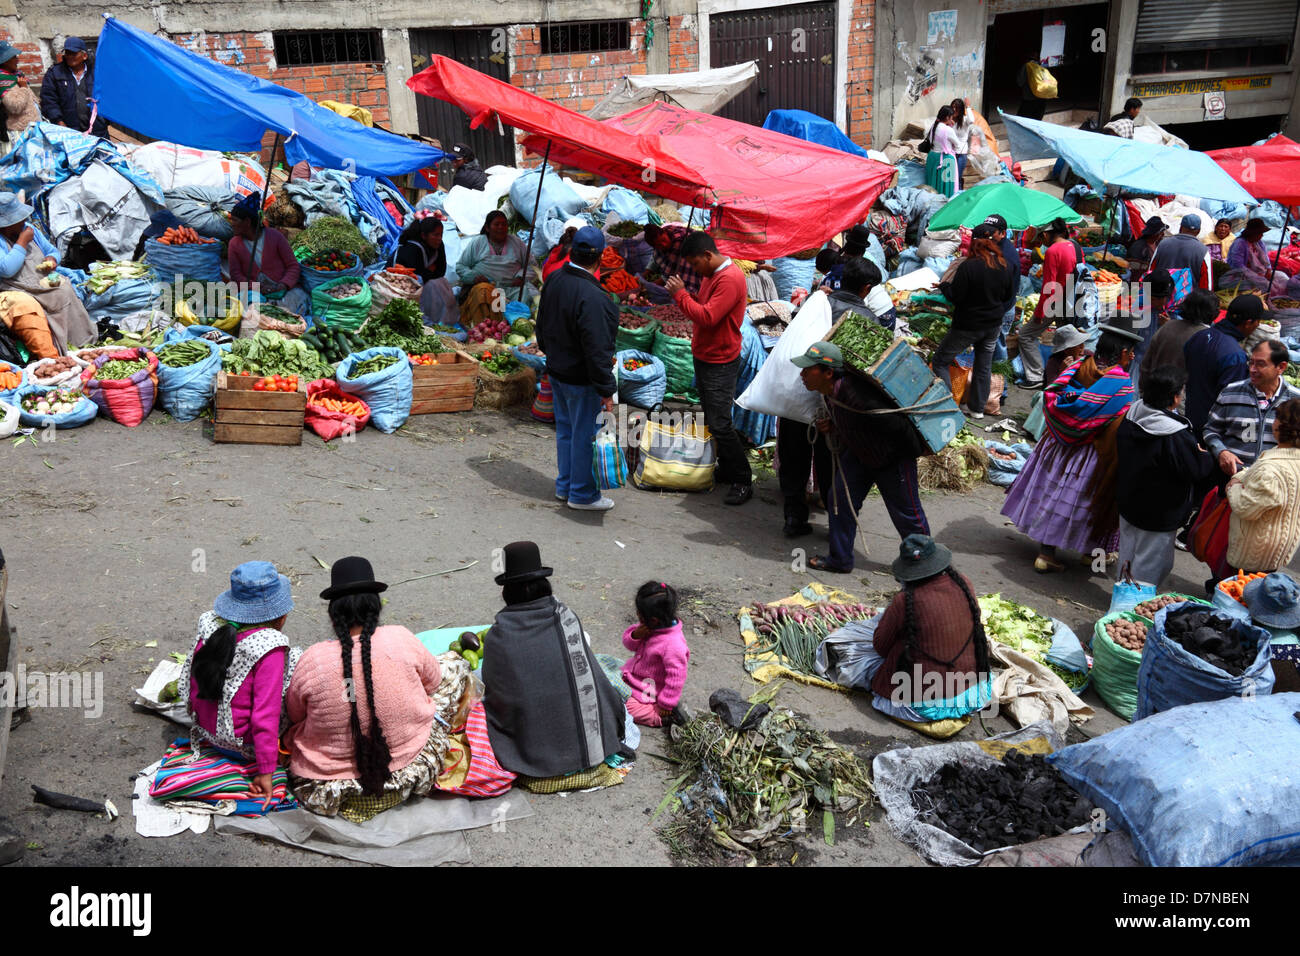 Aymara-Frauen oder Cholitas sitzen in Straßen- und Gemüseständen im Mercado Rodriguez, einem typischen Straßenmarkt in der Nähe des Stadtzentrums, La Paz, Bolivien Stockfoto